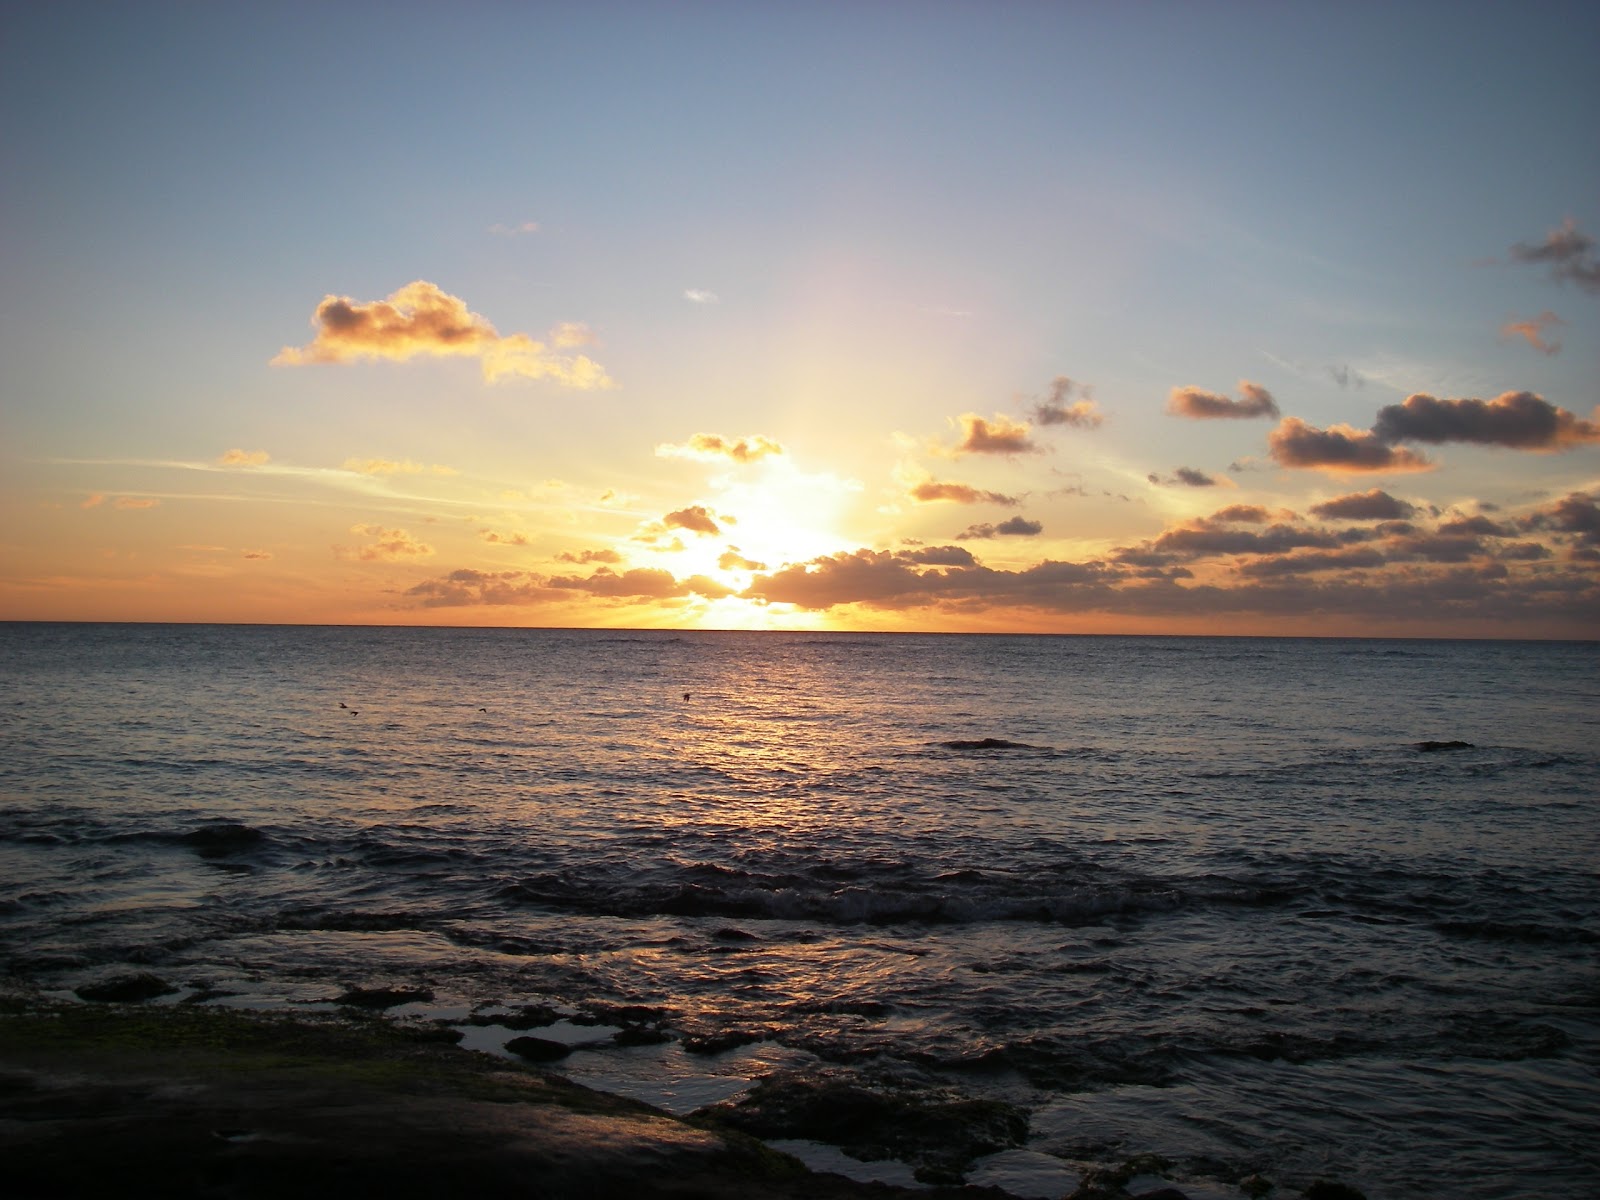 Hawaii beach sunset wallpaper   Polyvore